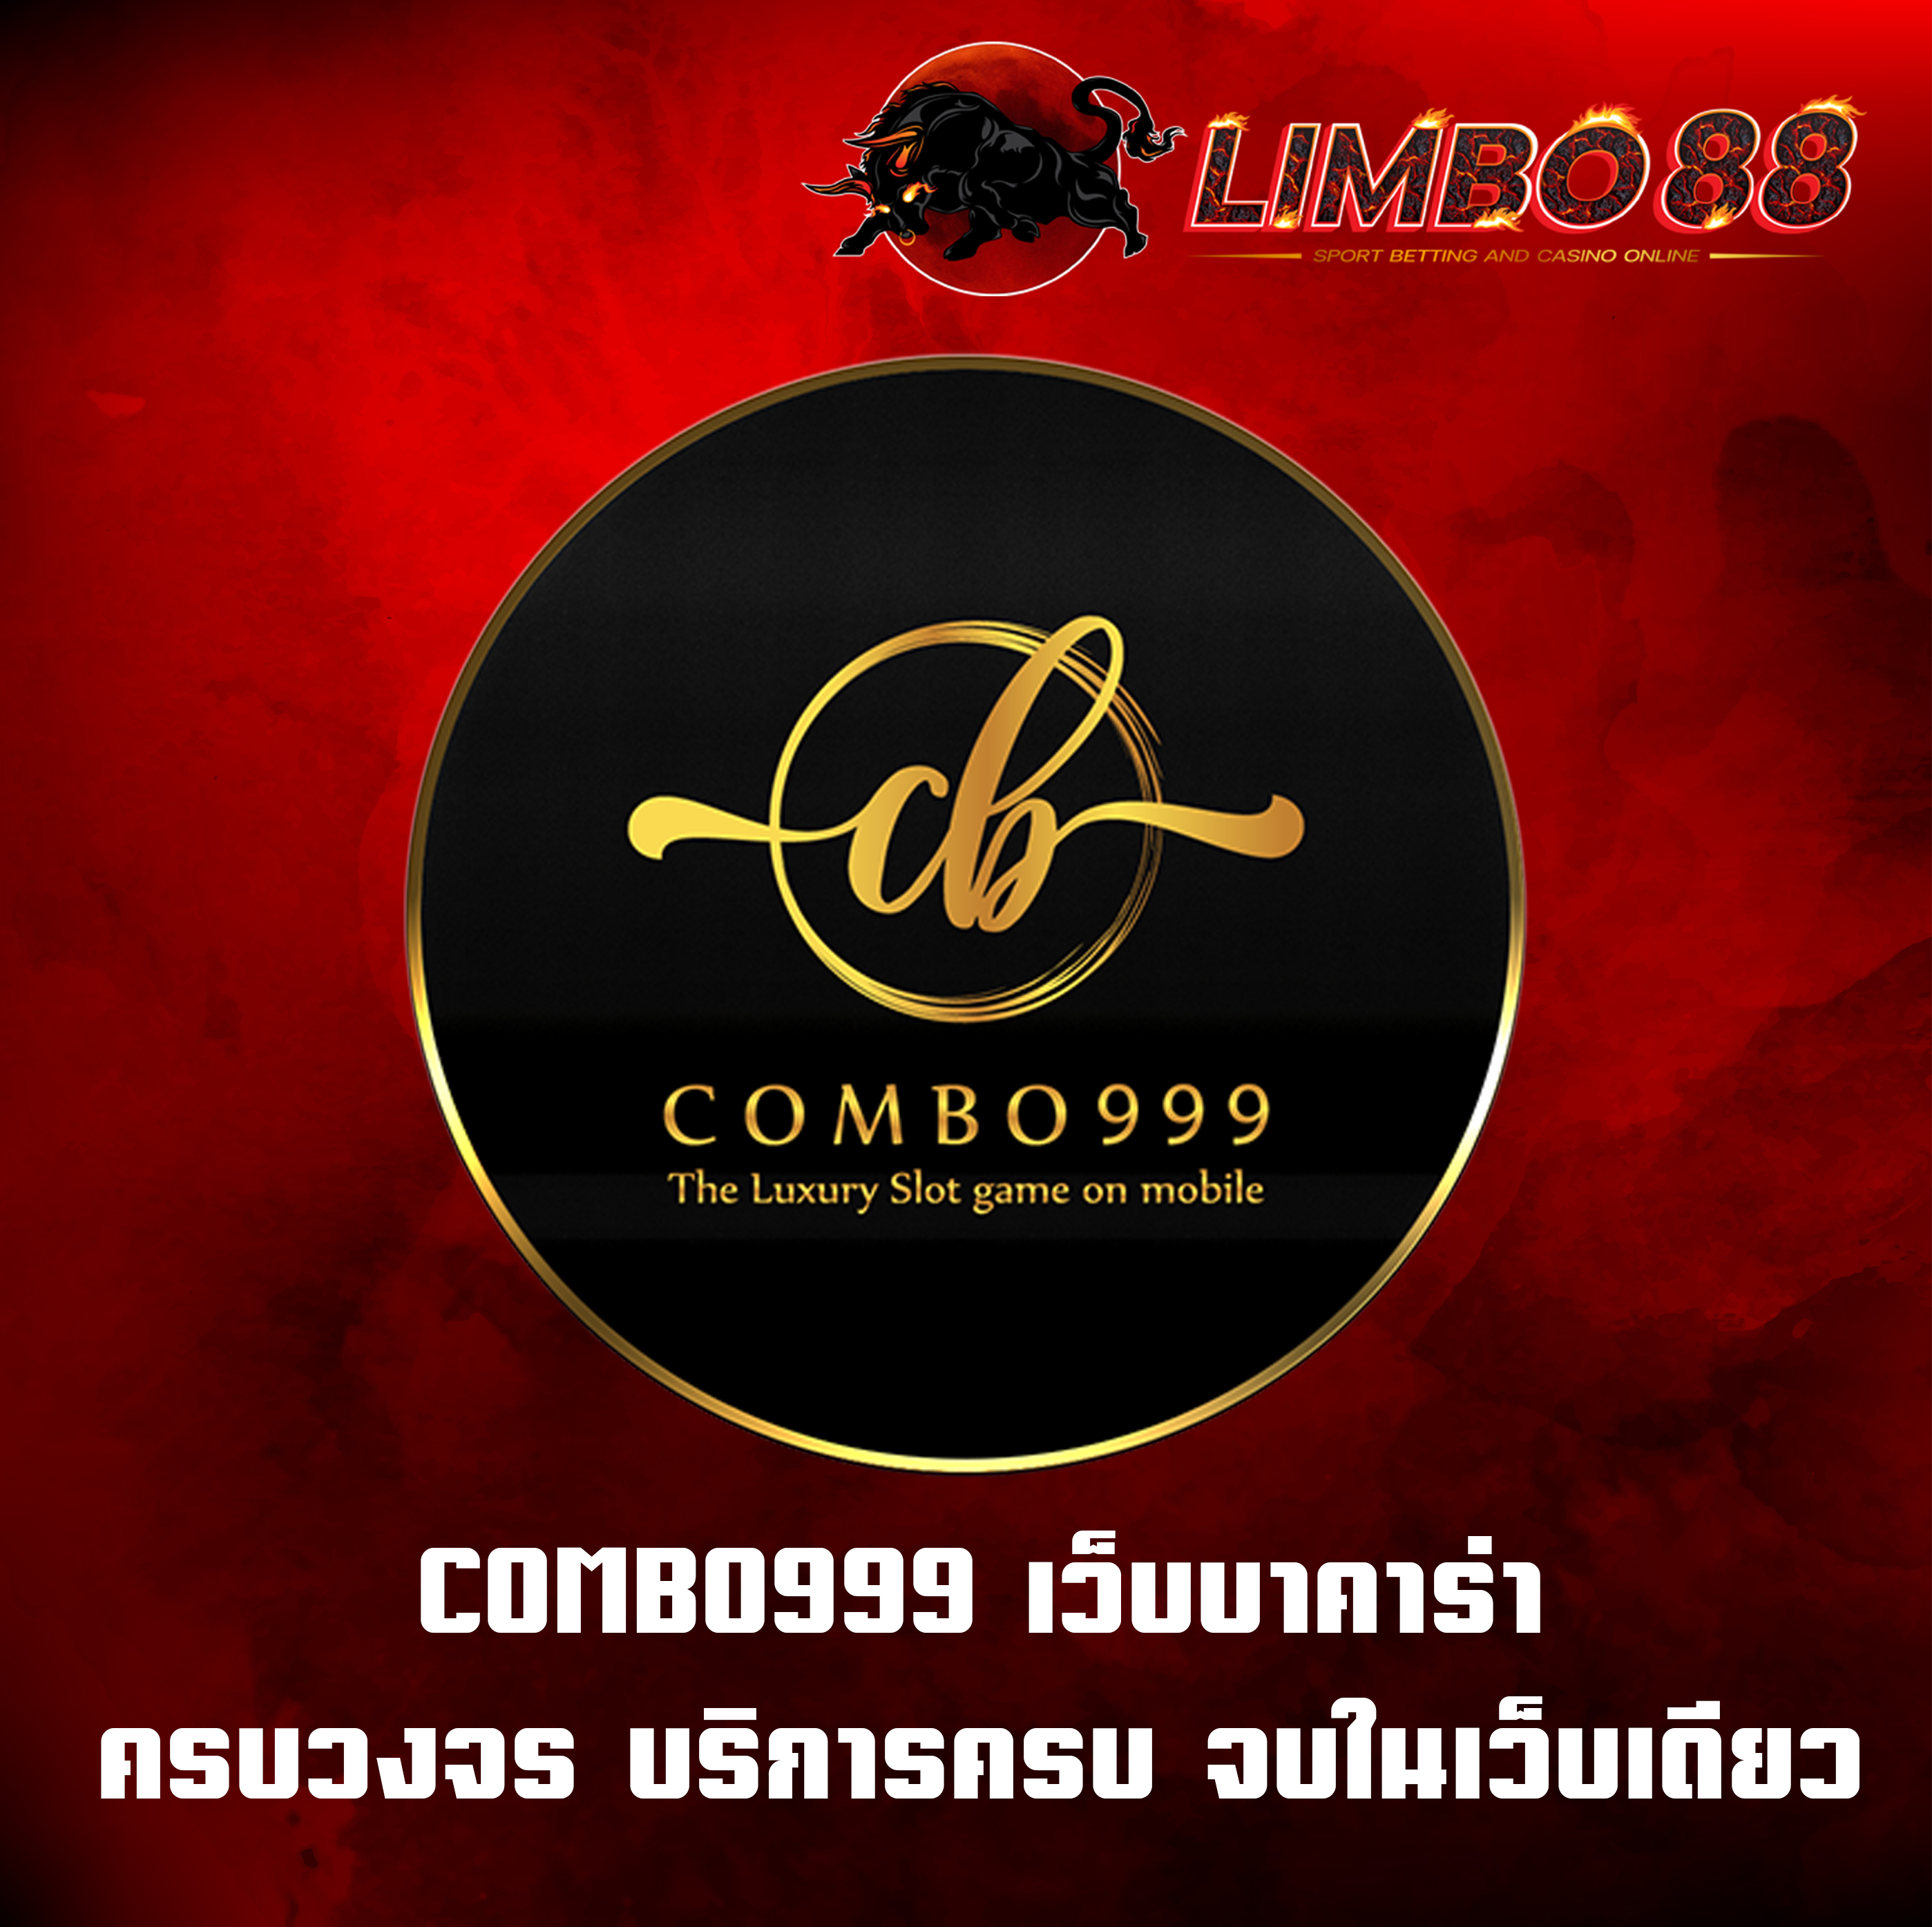 COMBO999 เว็บบาคาร่า ครบวงจร บริการครบ จบในเว็บเดียว